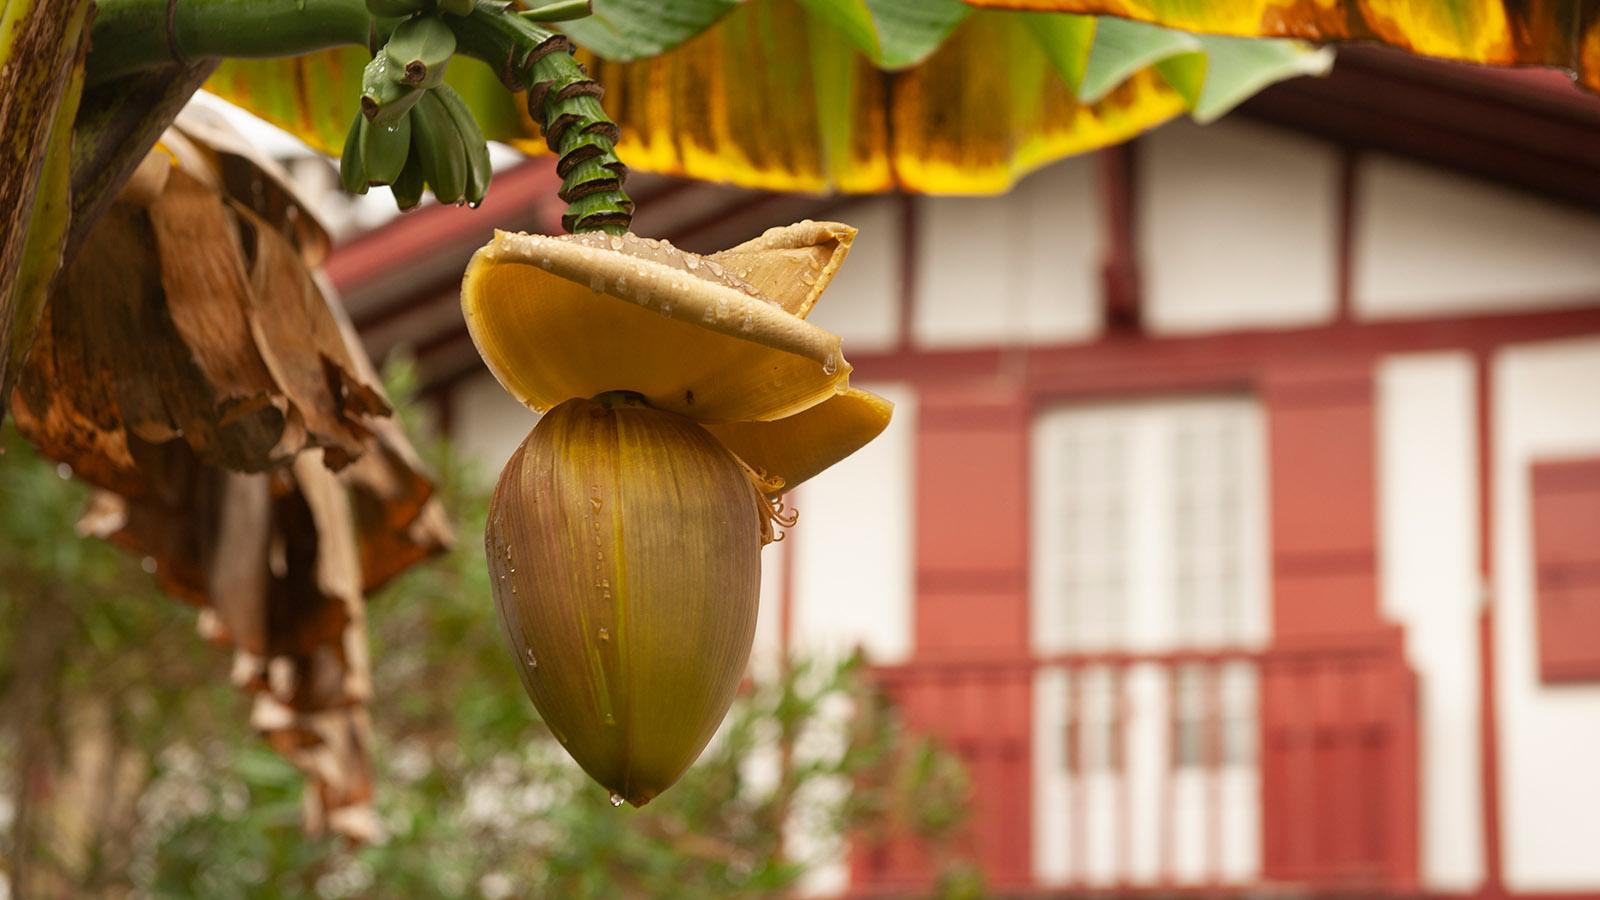 Selbst Bananen wachsen in Ainhoa vor den Häusern! Foto: Hilke Maunder